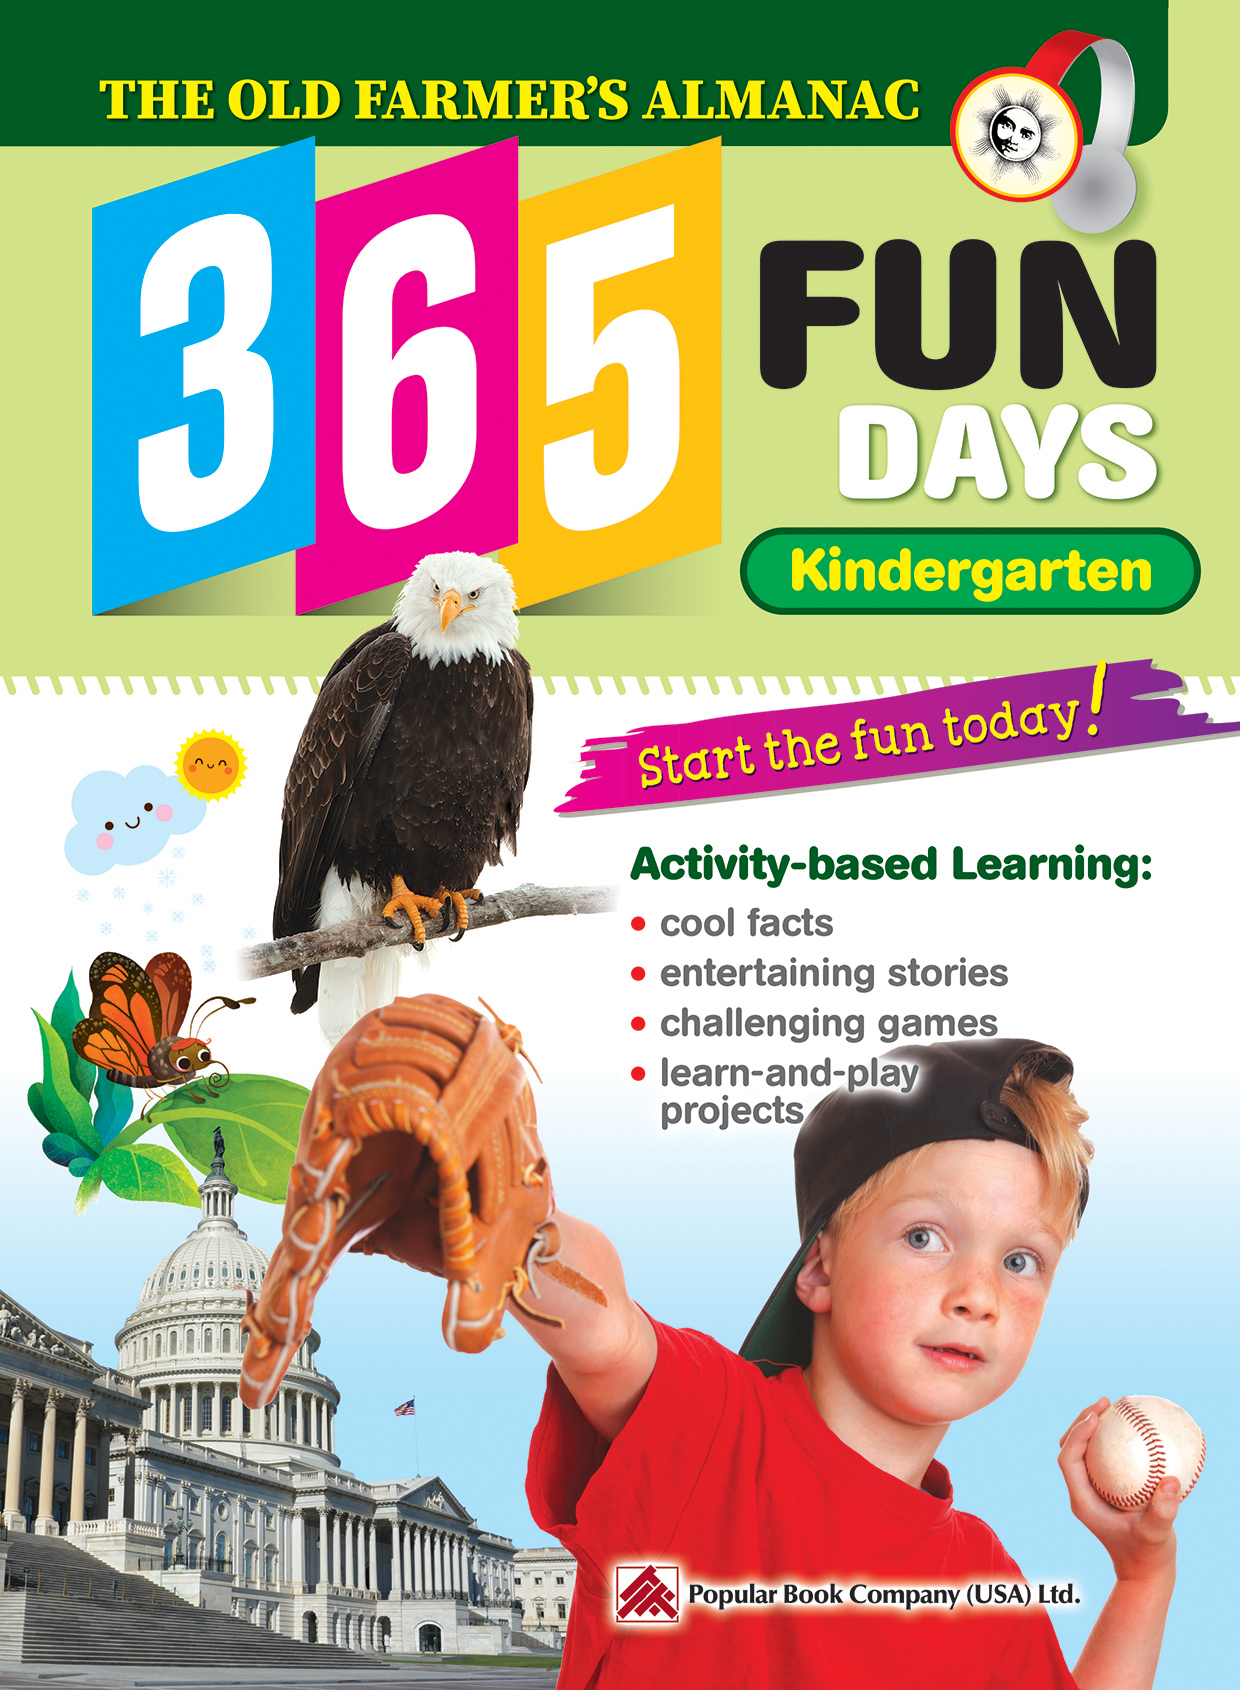 365 Fun Days Kindergarten